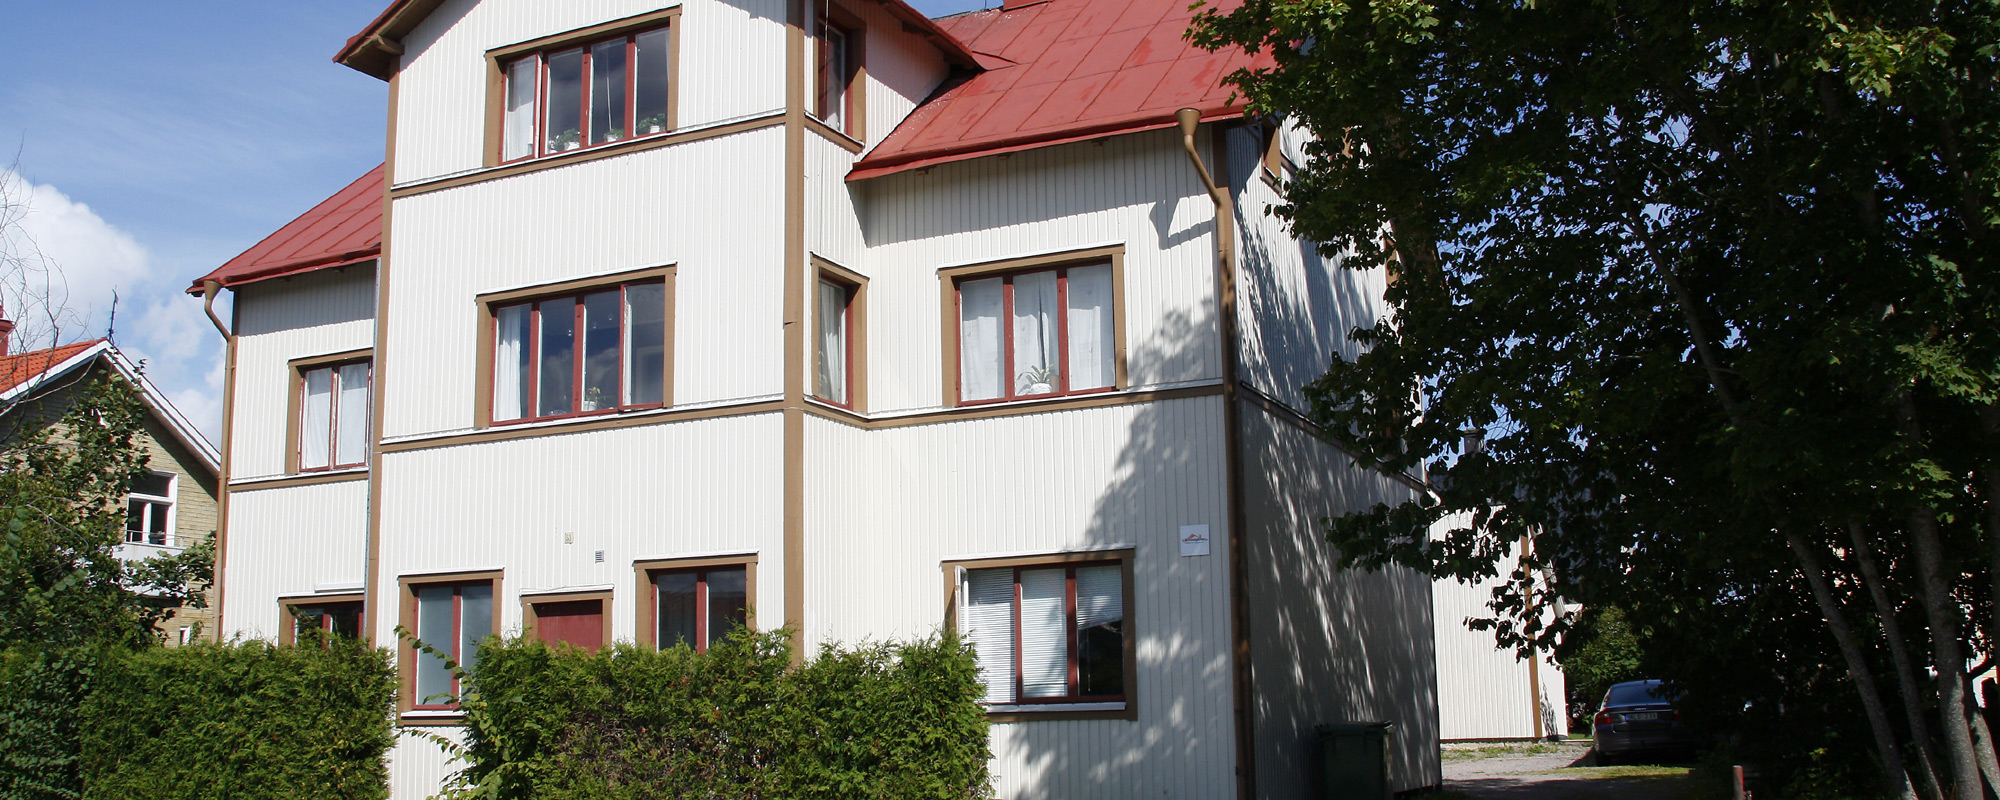 Välkommen till <br />PM Fastigheter i Ronneby!